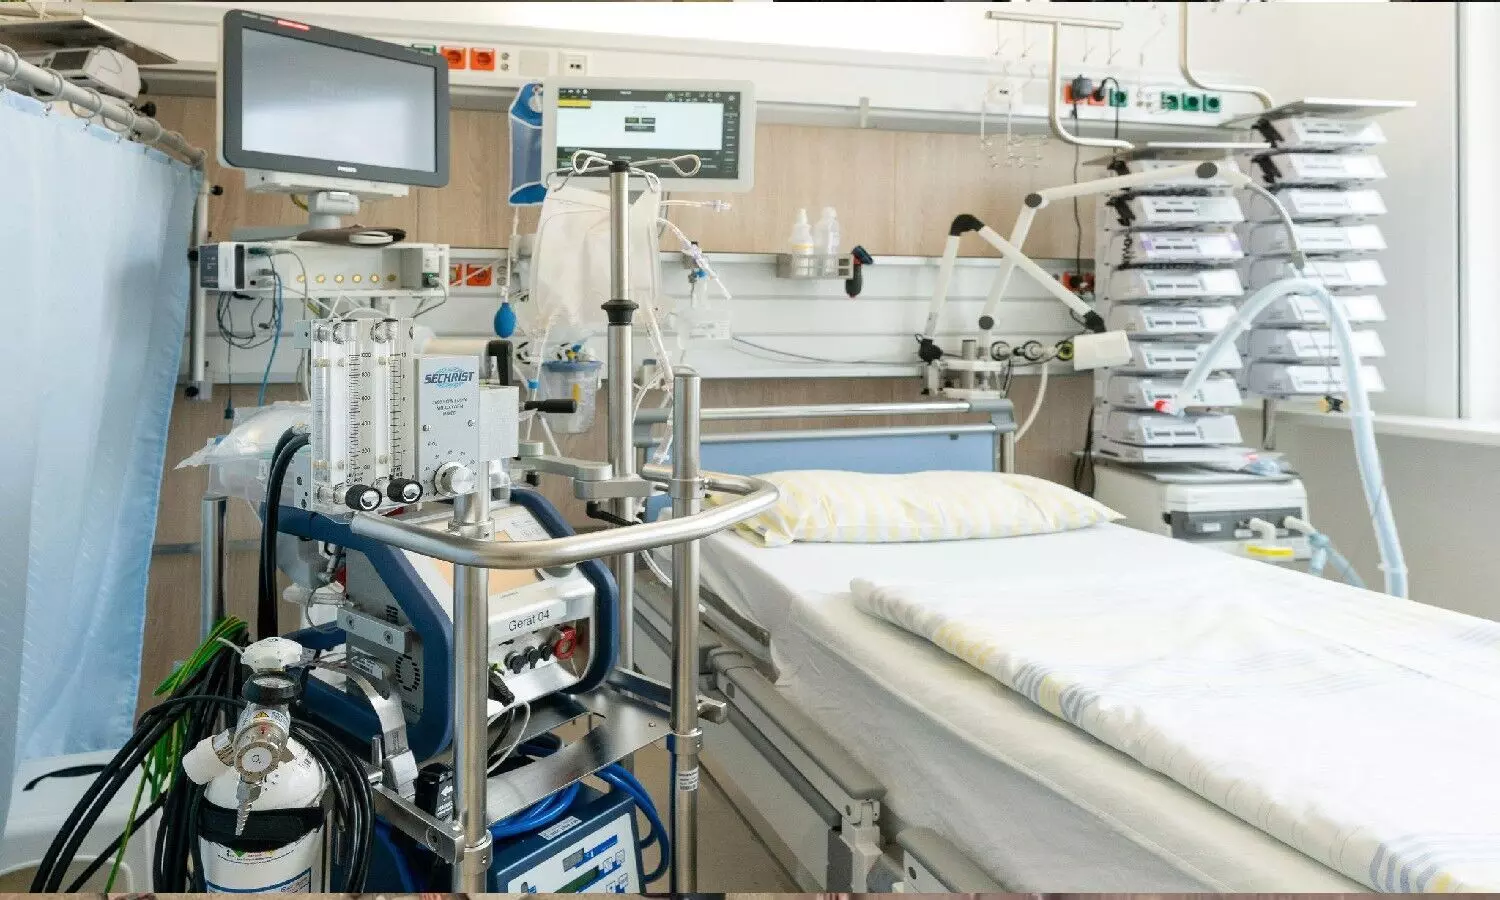 राजधानी लखनऊ के लोग कोविड अस्पतालों के खाली व भरे बेड की स्थिति का कहीं भी किसी भी जगह से ऑनलाइन जान सकेंगे।